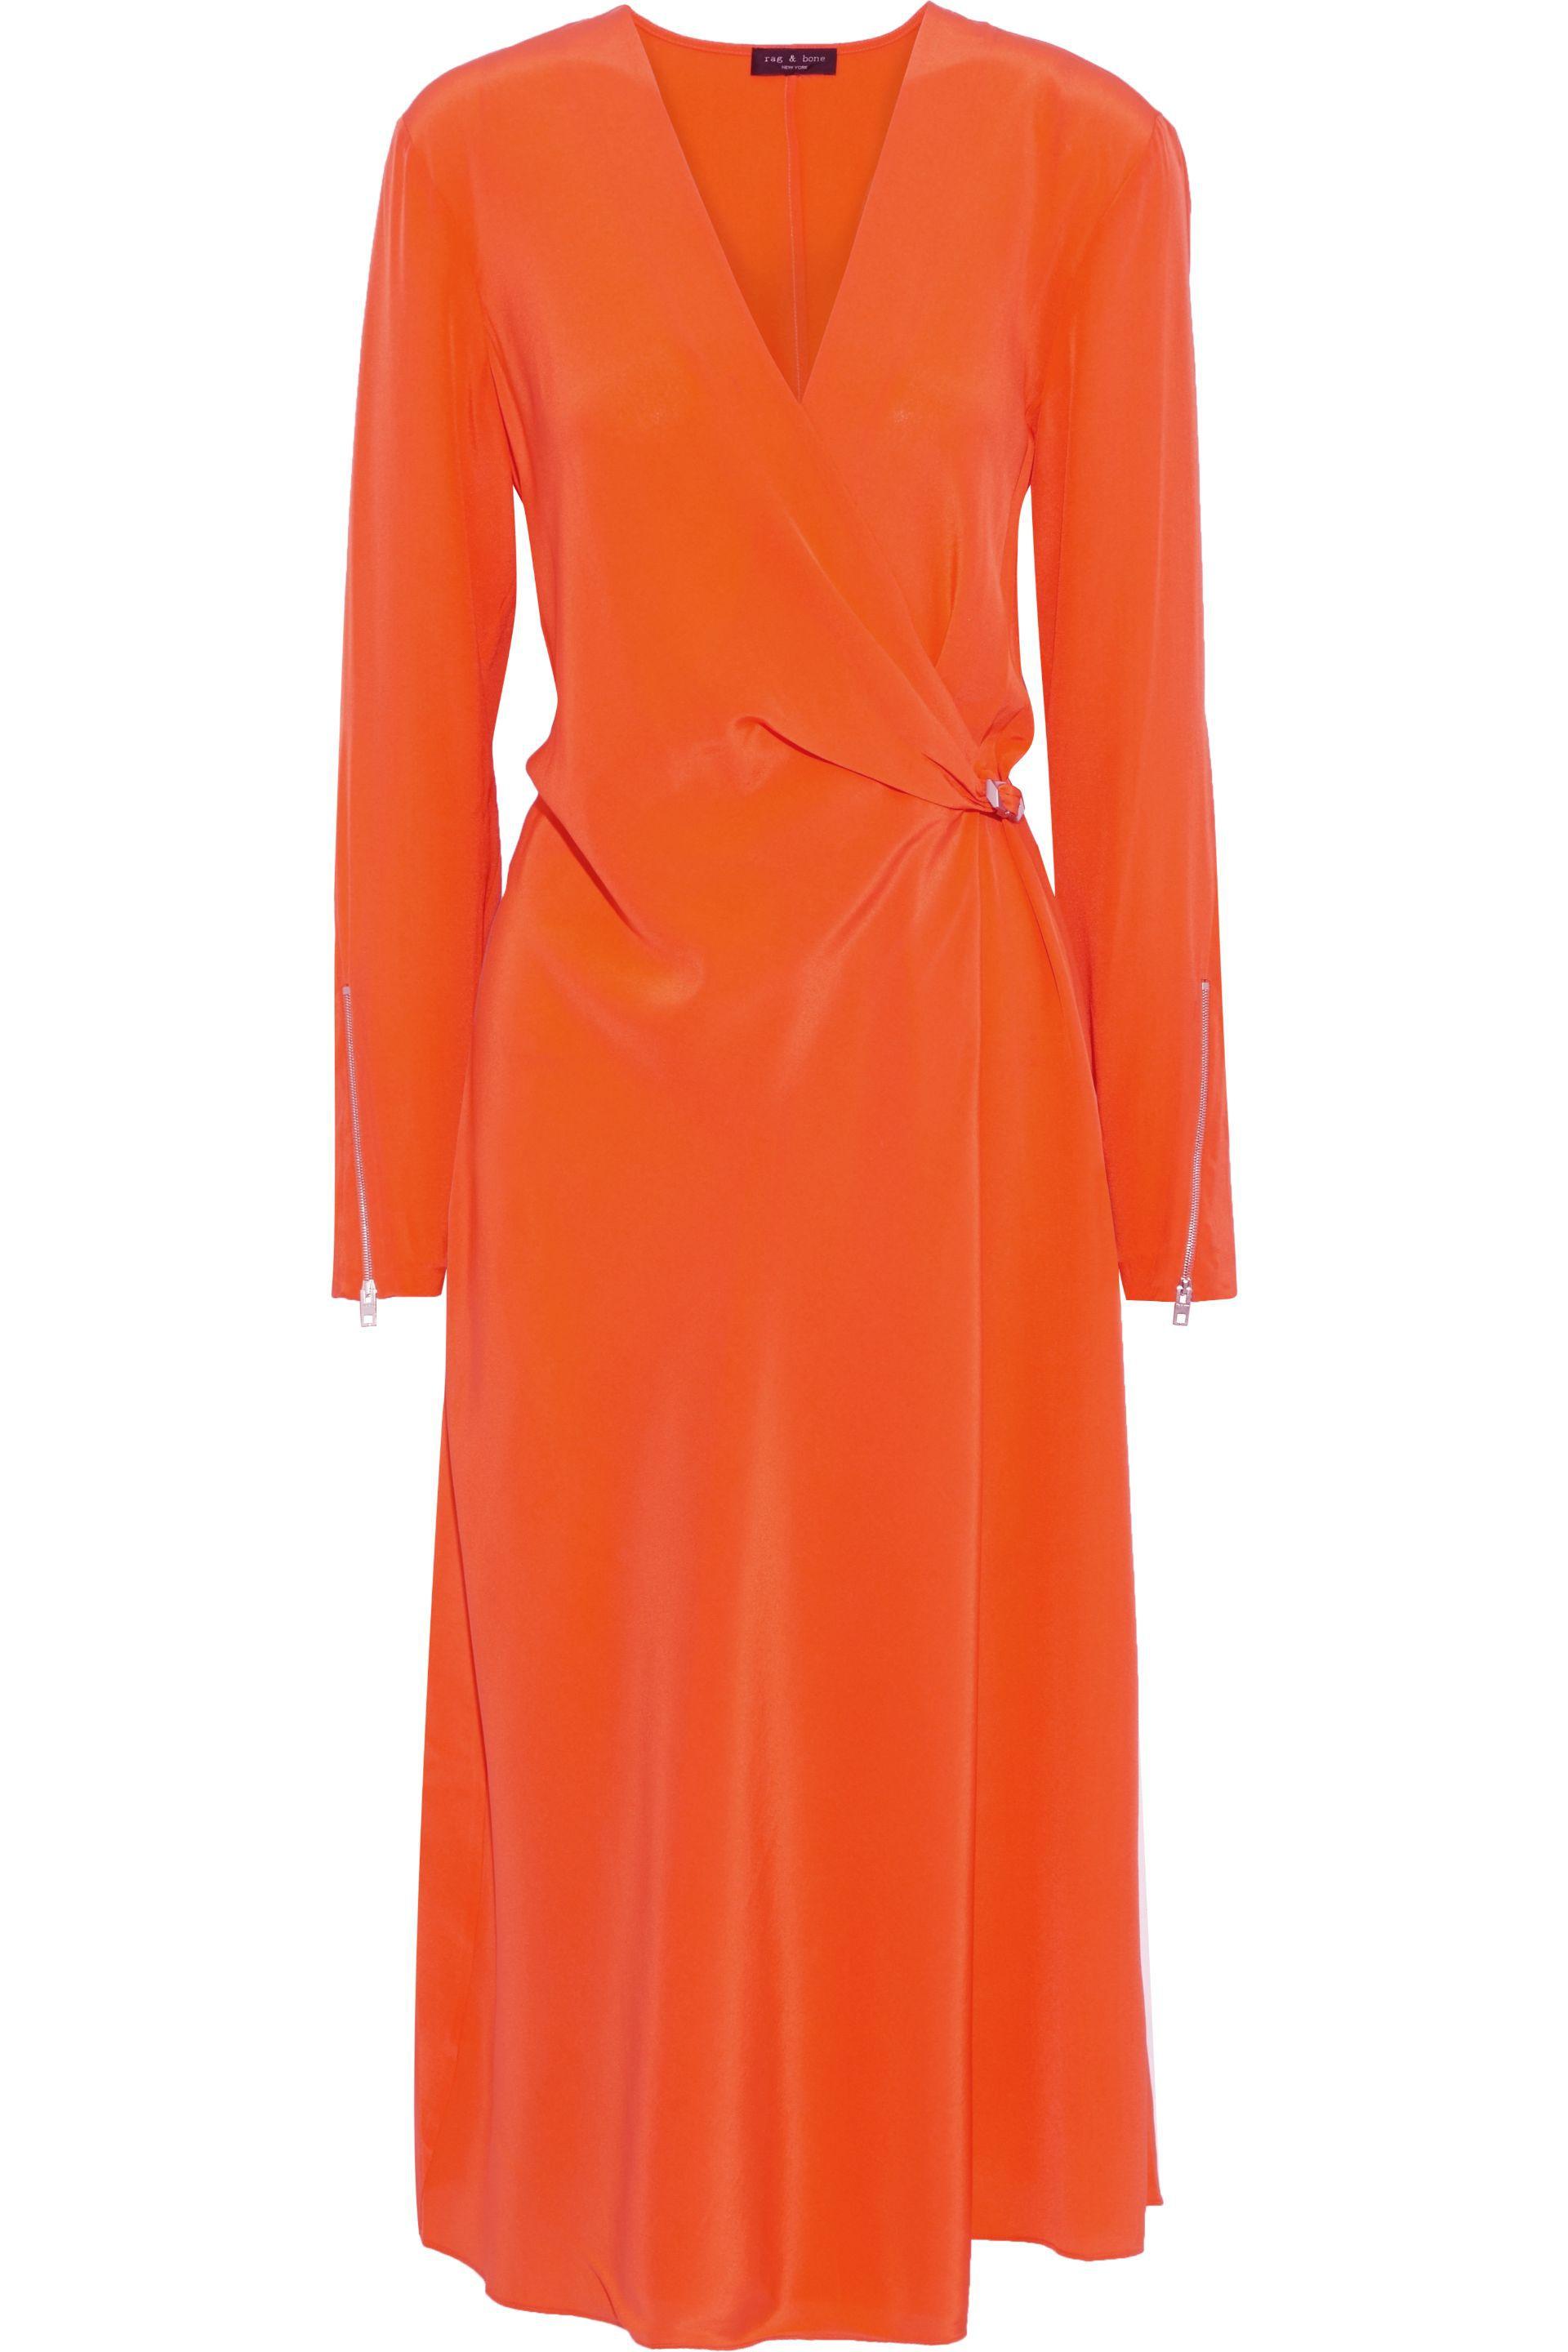 Rag & Bone Odette Long-sleeve Silk Wrap Dress in Bright Orange (Orange ...